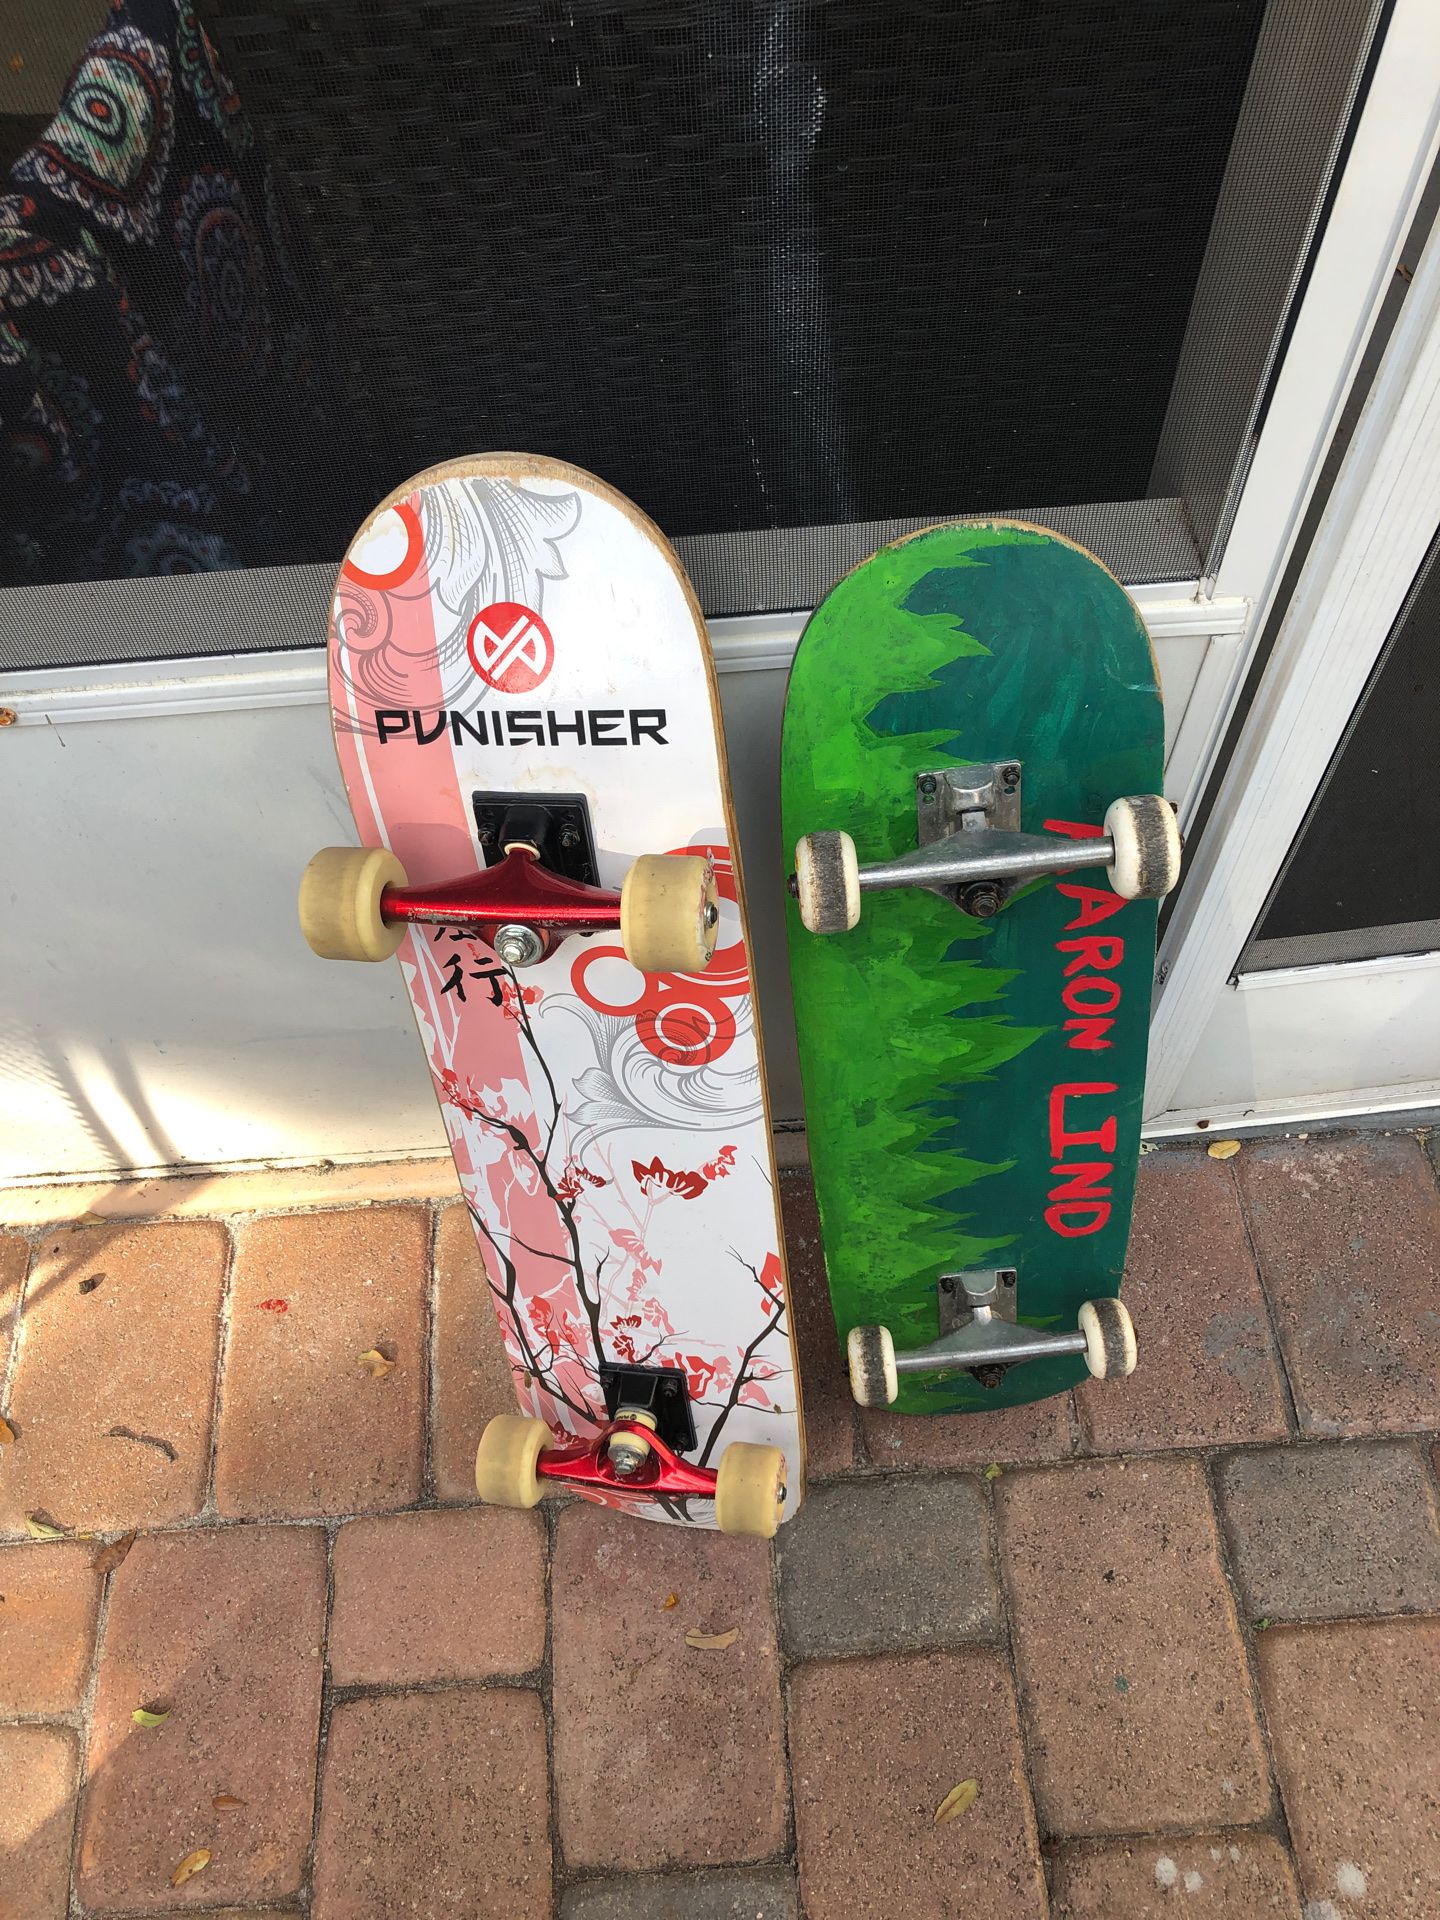 2 skateboards